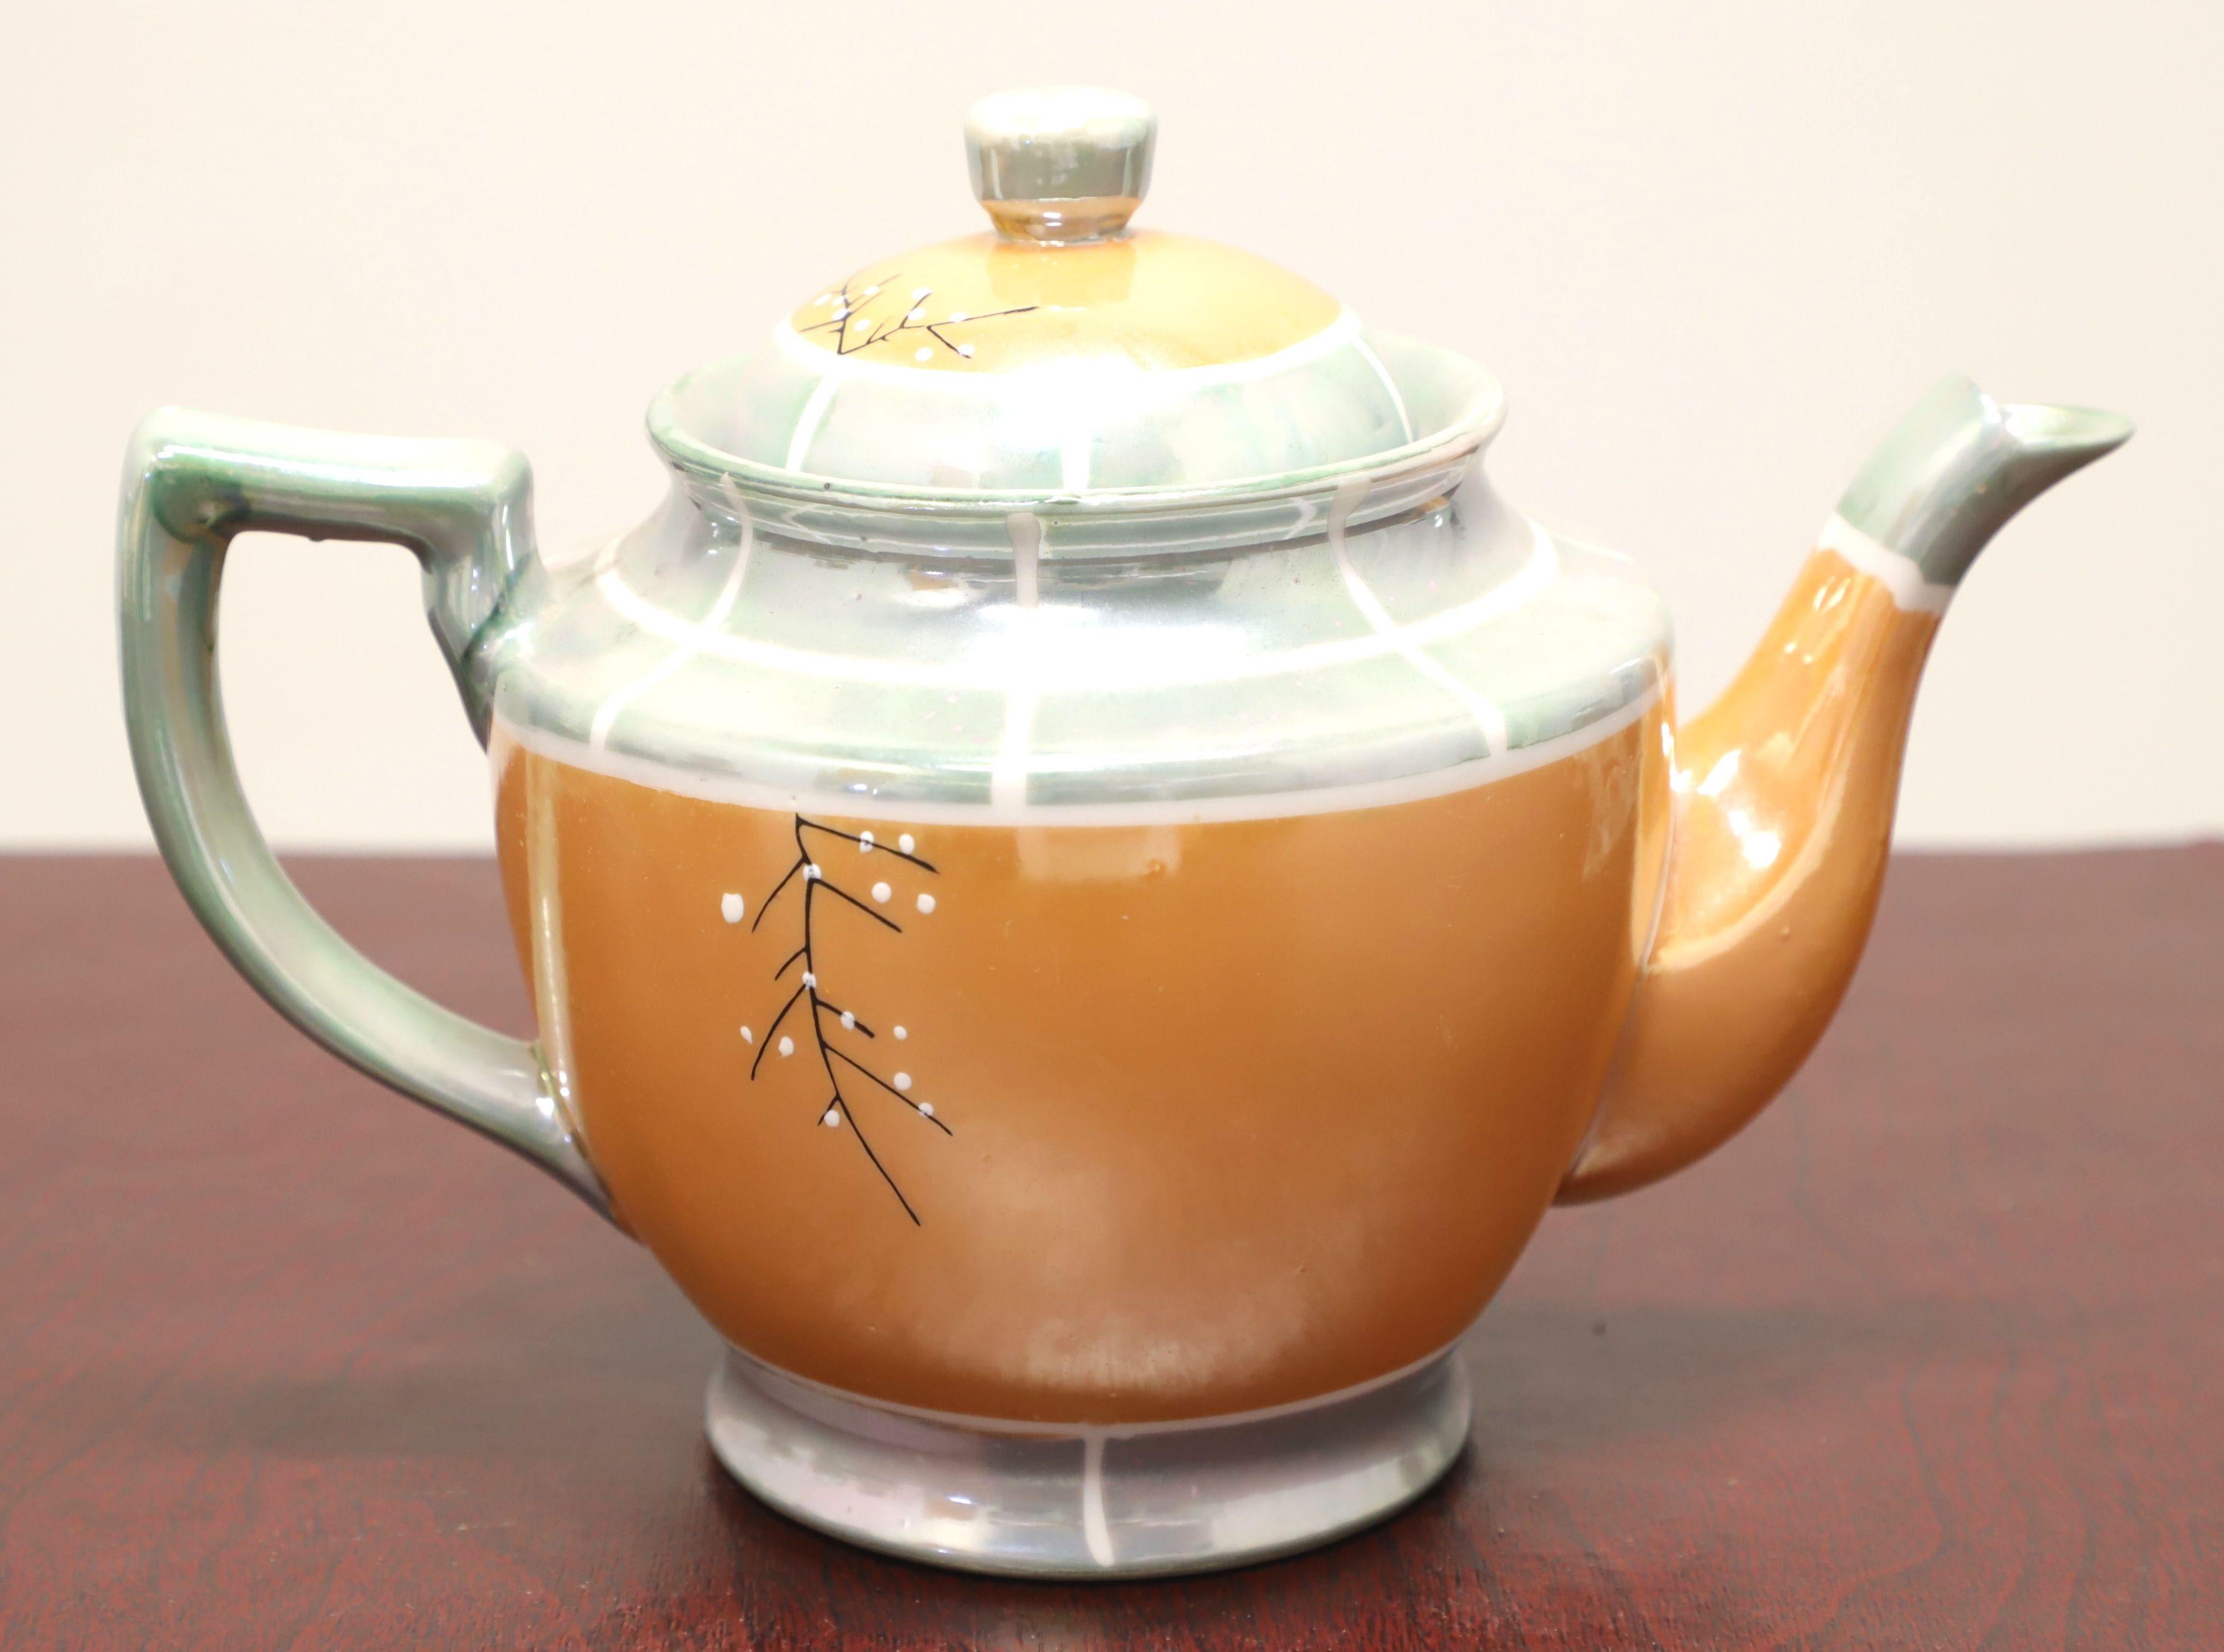 Service à thé pour six personnes de style asiatique par Takito, au début du milieu du 20e siècle. Fine porcelaine lustrée, peinte à la main en blanc, pêche et gris/bleu avec des accents noirs et verts d'un motif de fleurs de cerisier, composée de